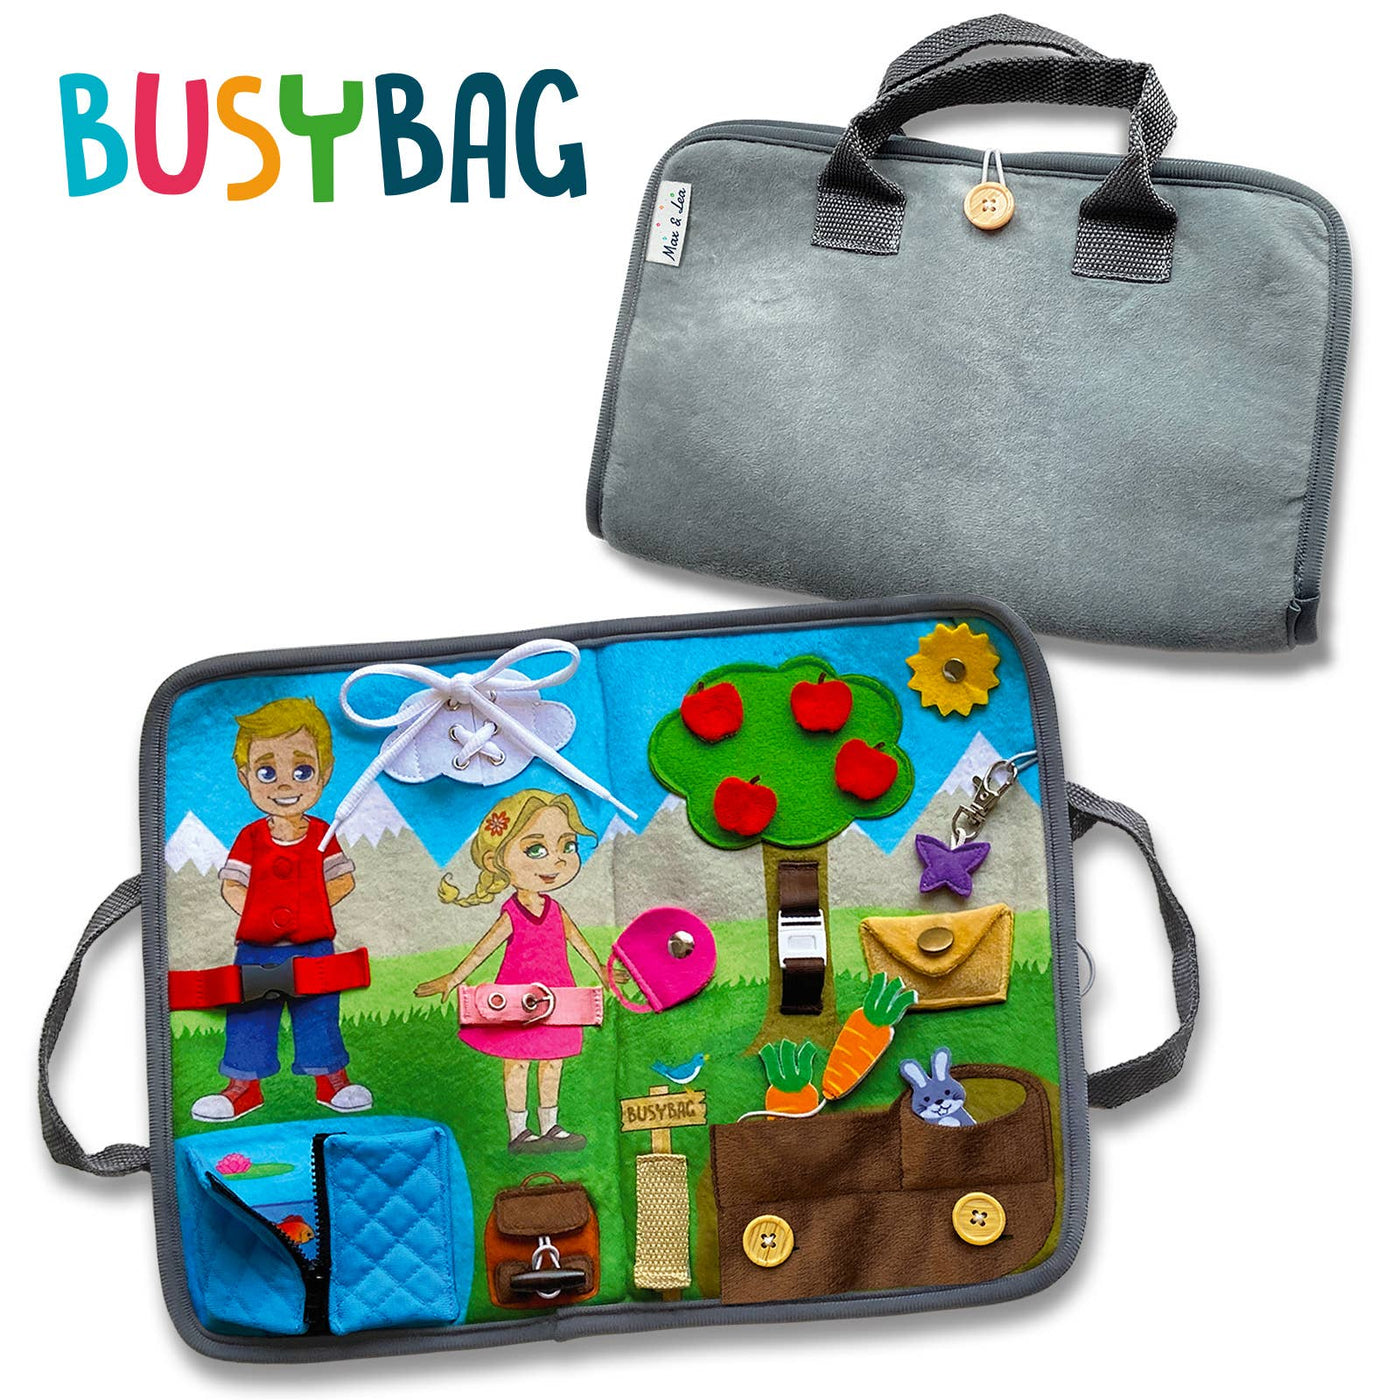 Busy Bag Montessori - Max and Lea